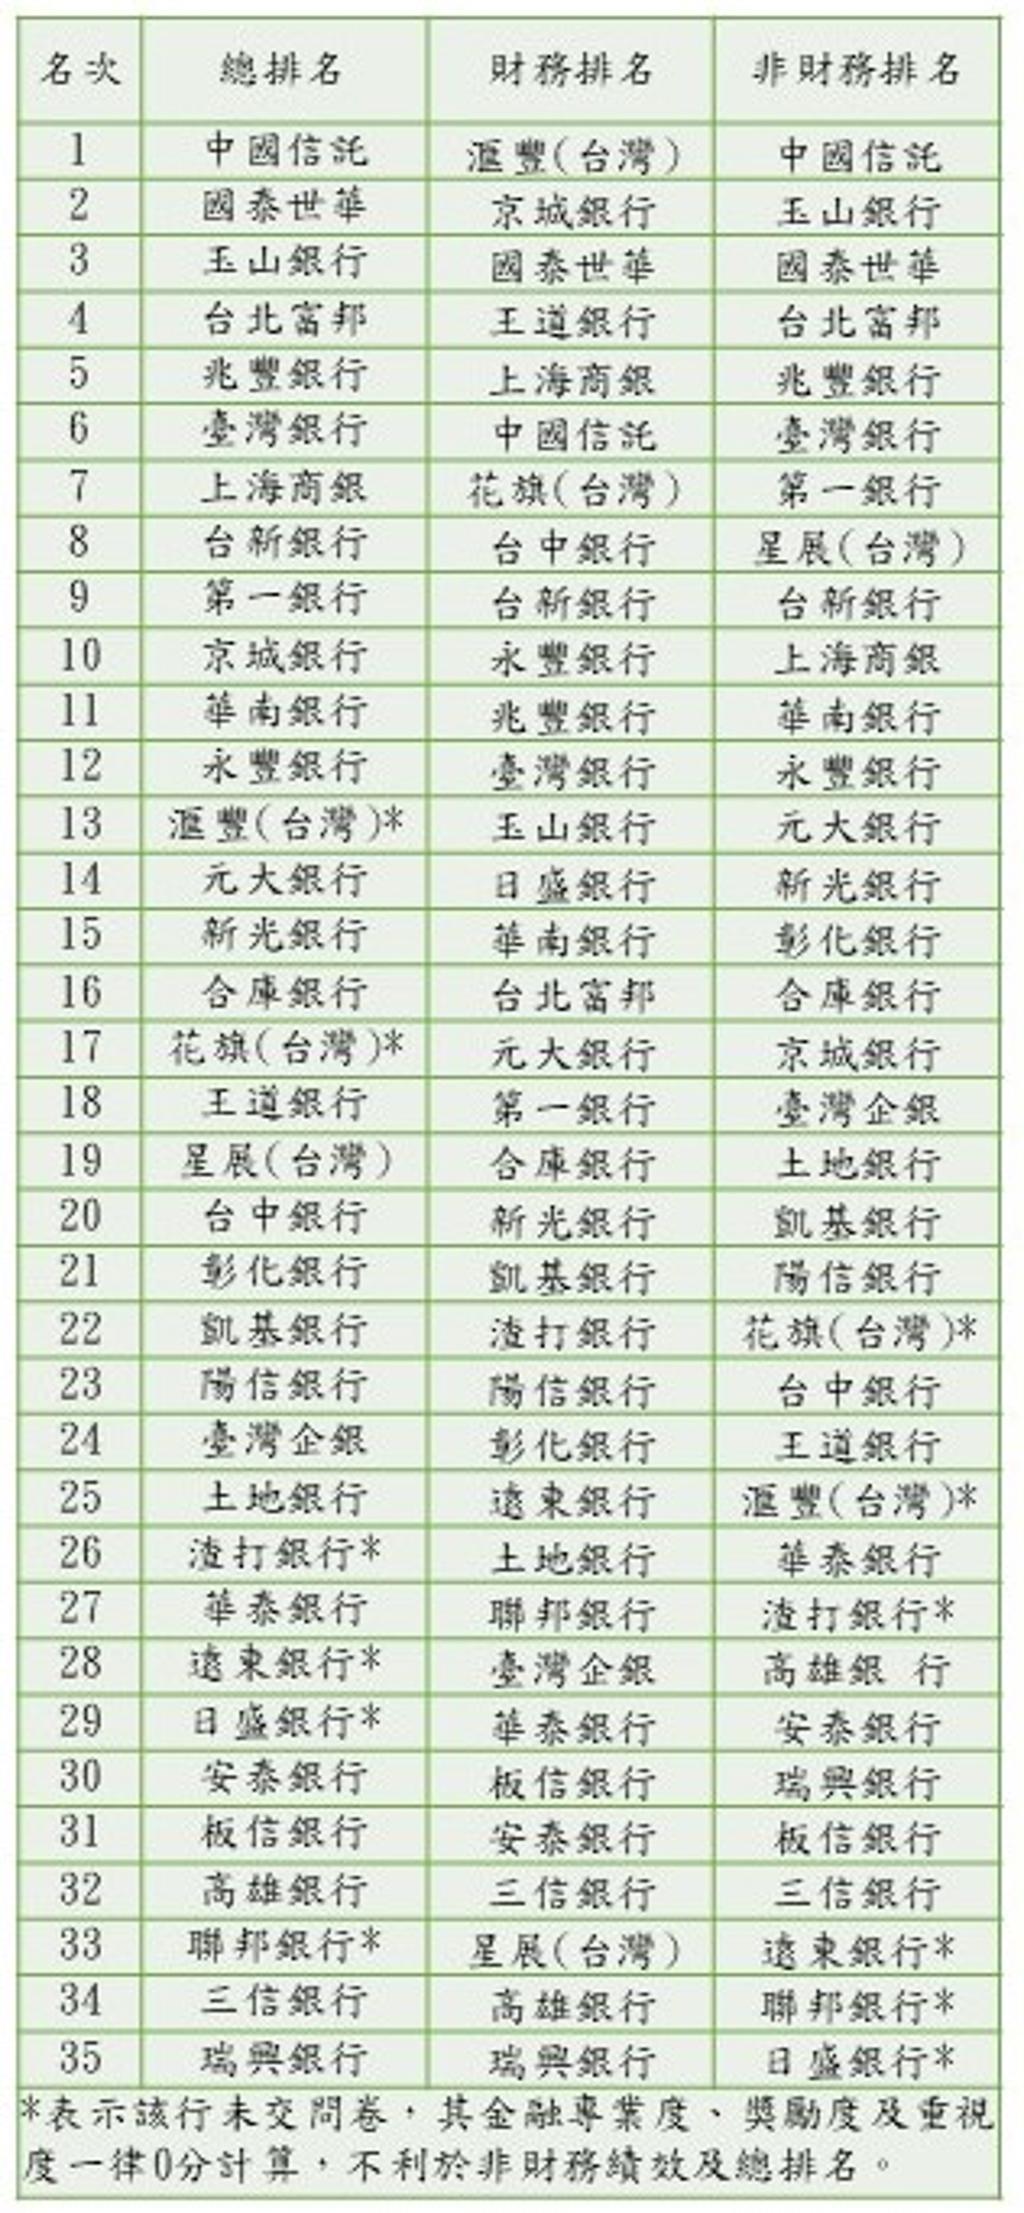   台灣大學金融研究中心2022 年銀行競爭力評比排名 